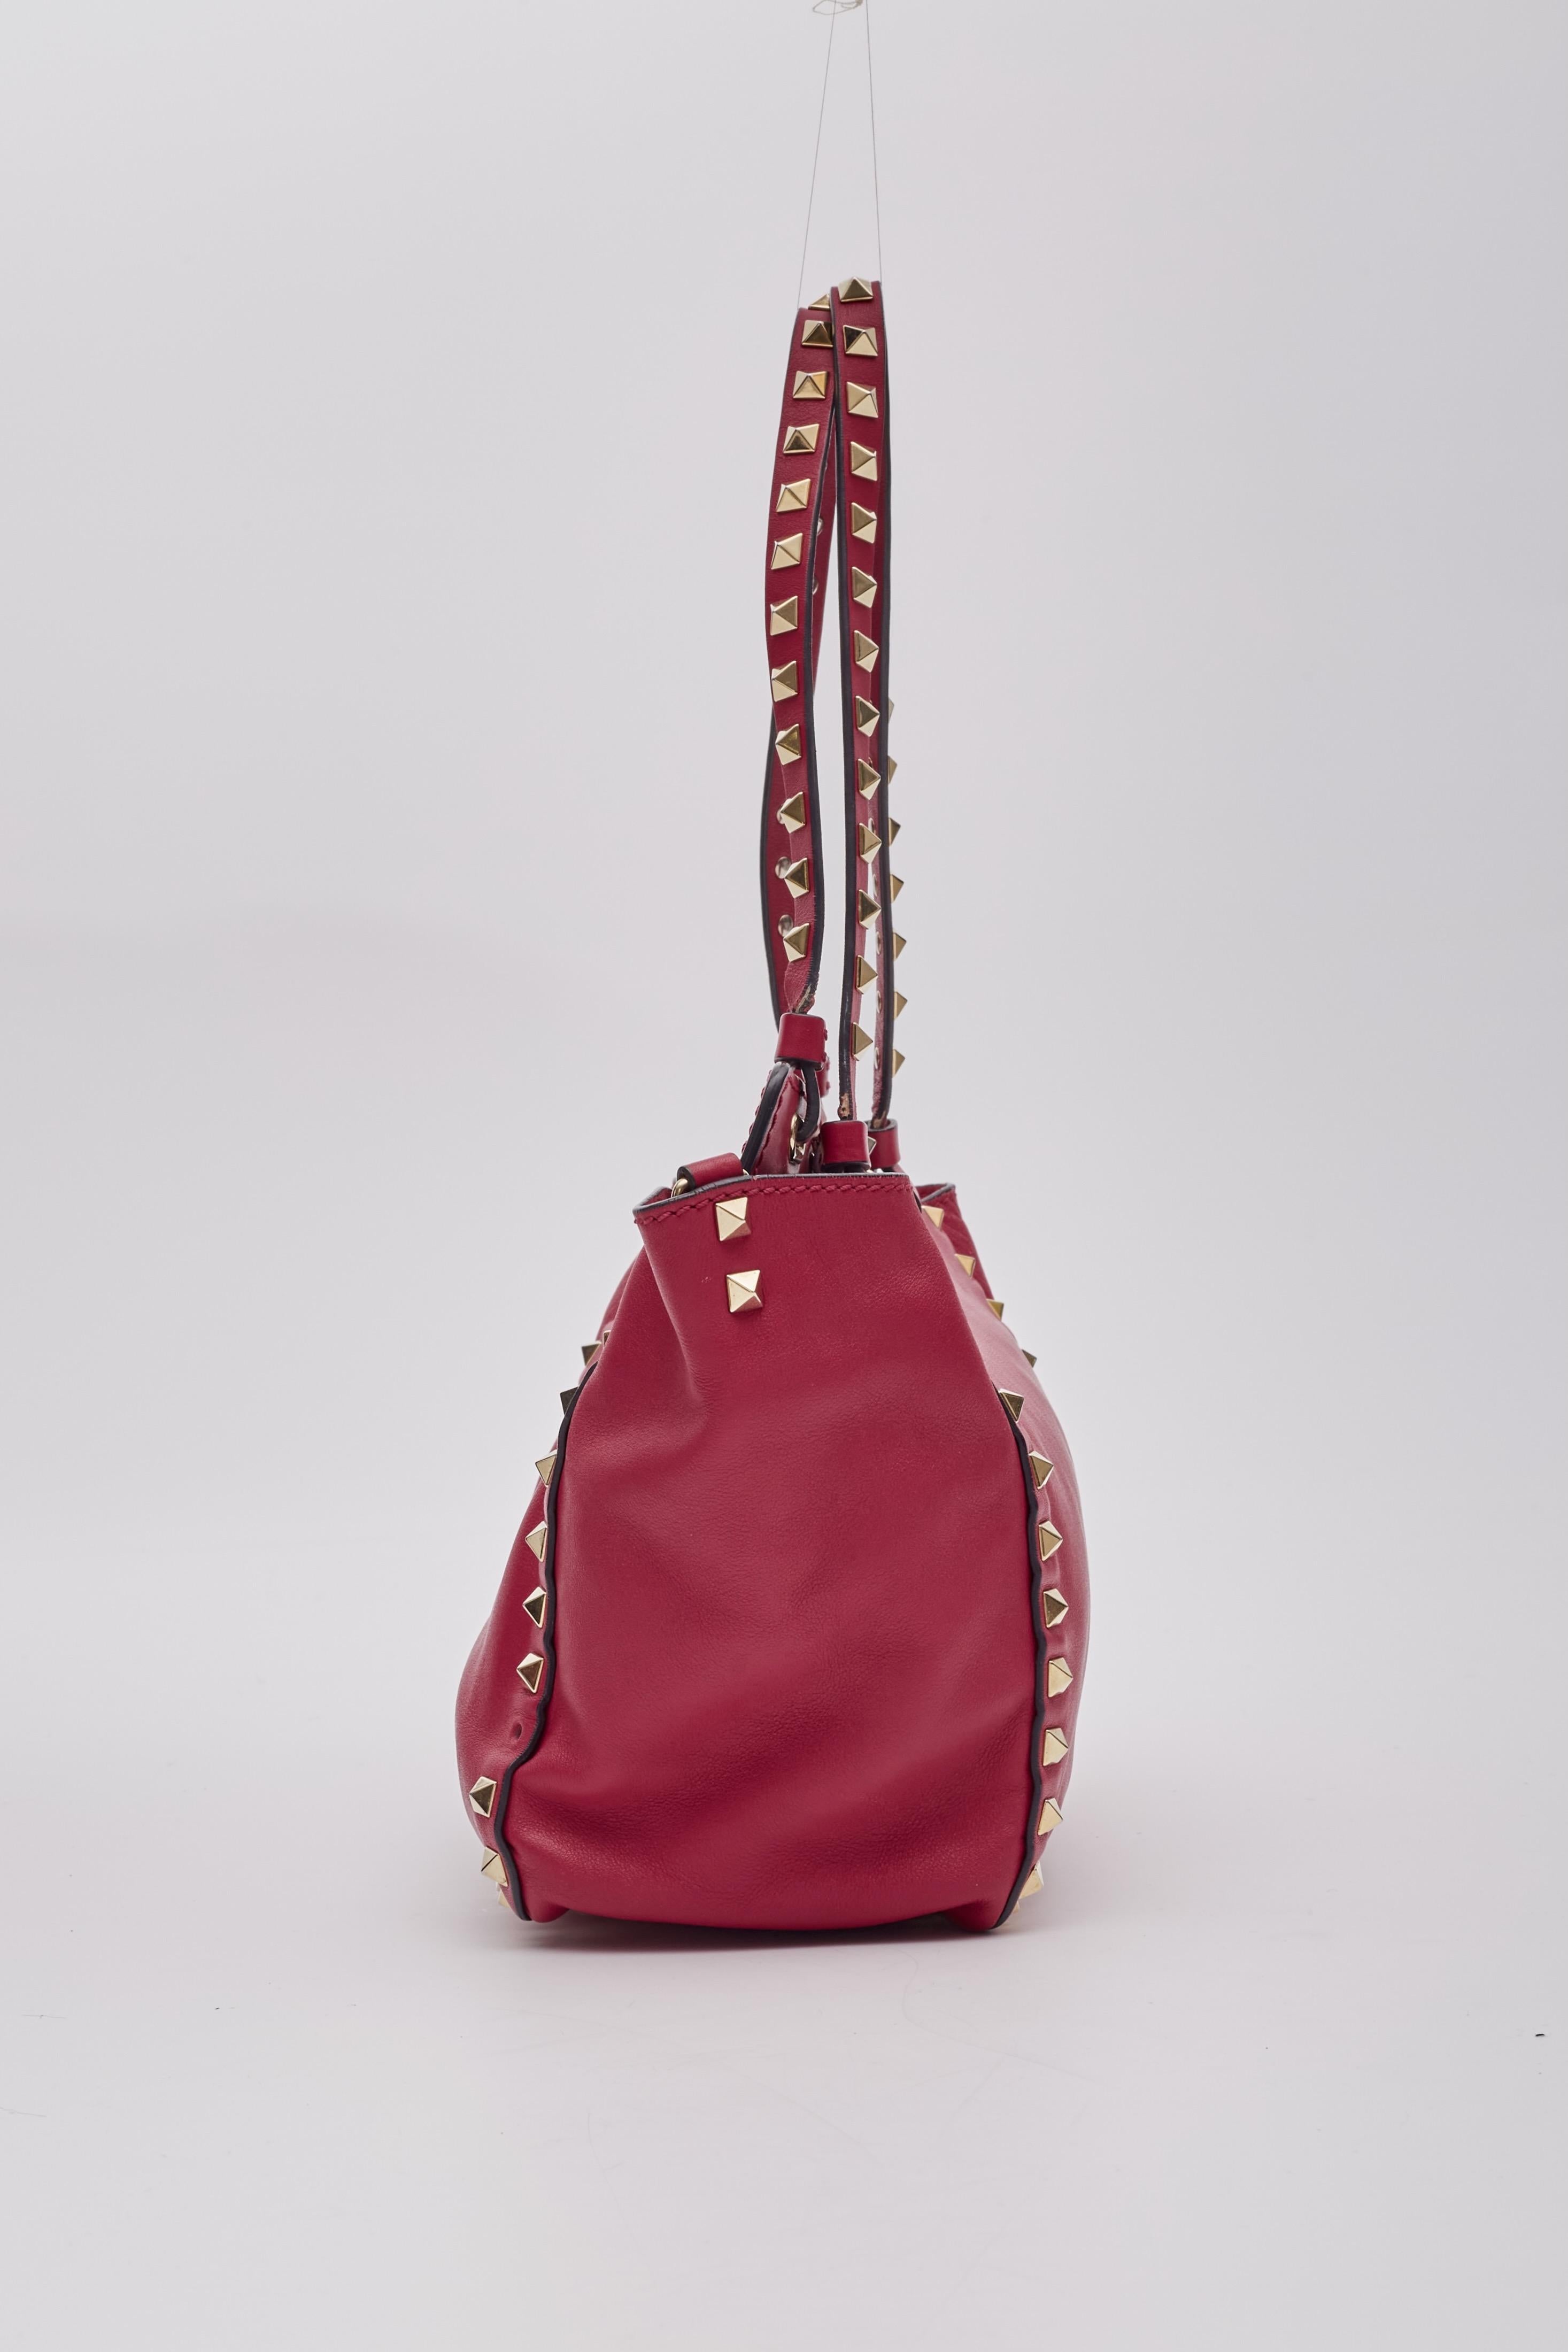 Women's Valentino Garavani Red Leather Rockstud Shoulder Bag For Sale